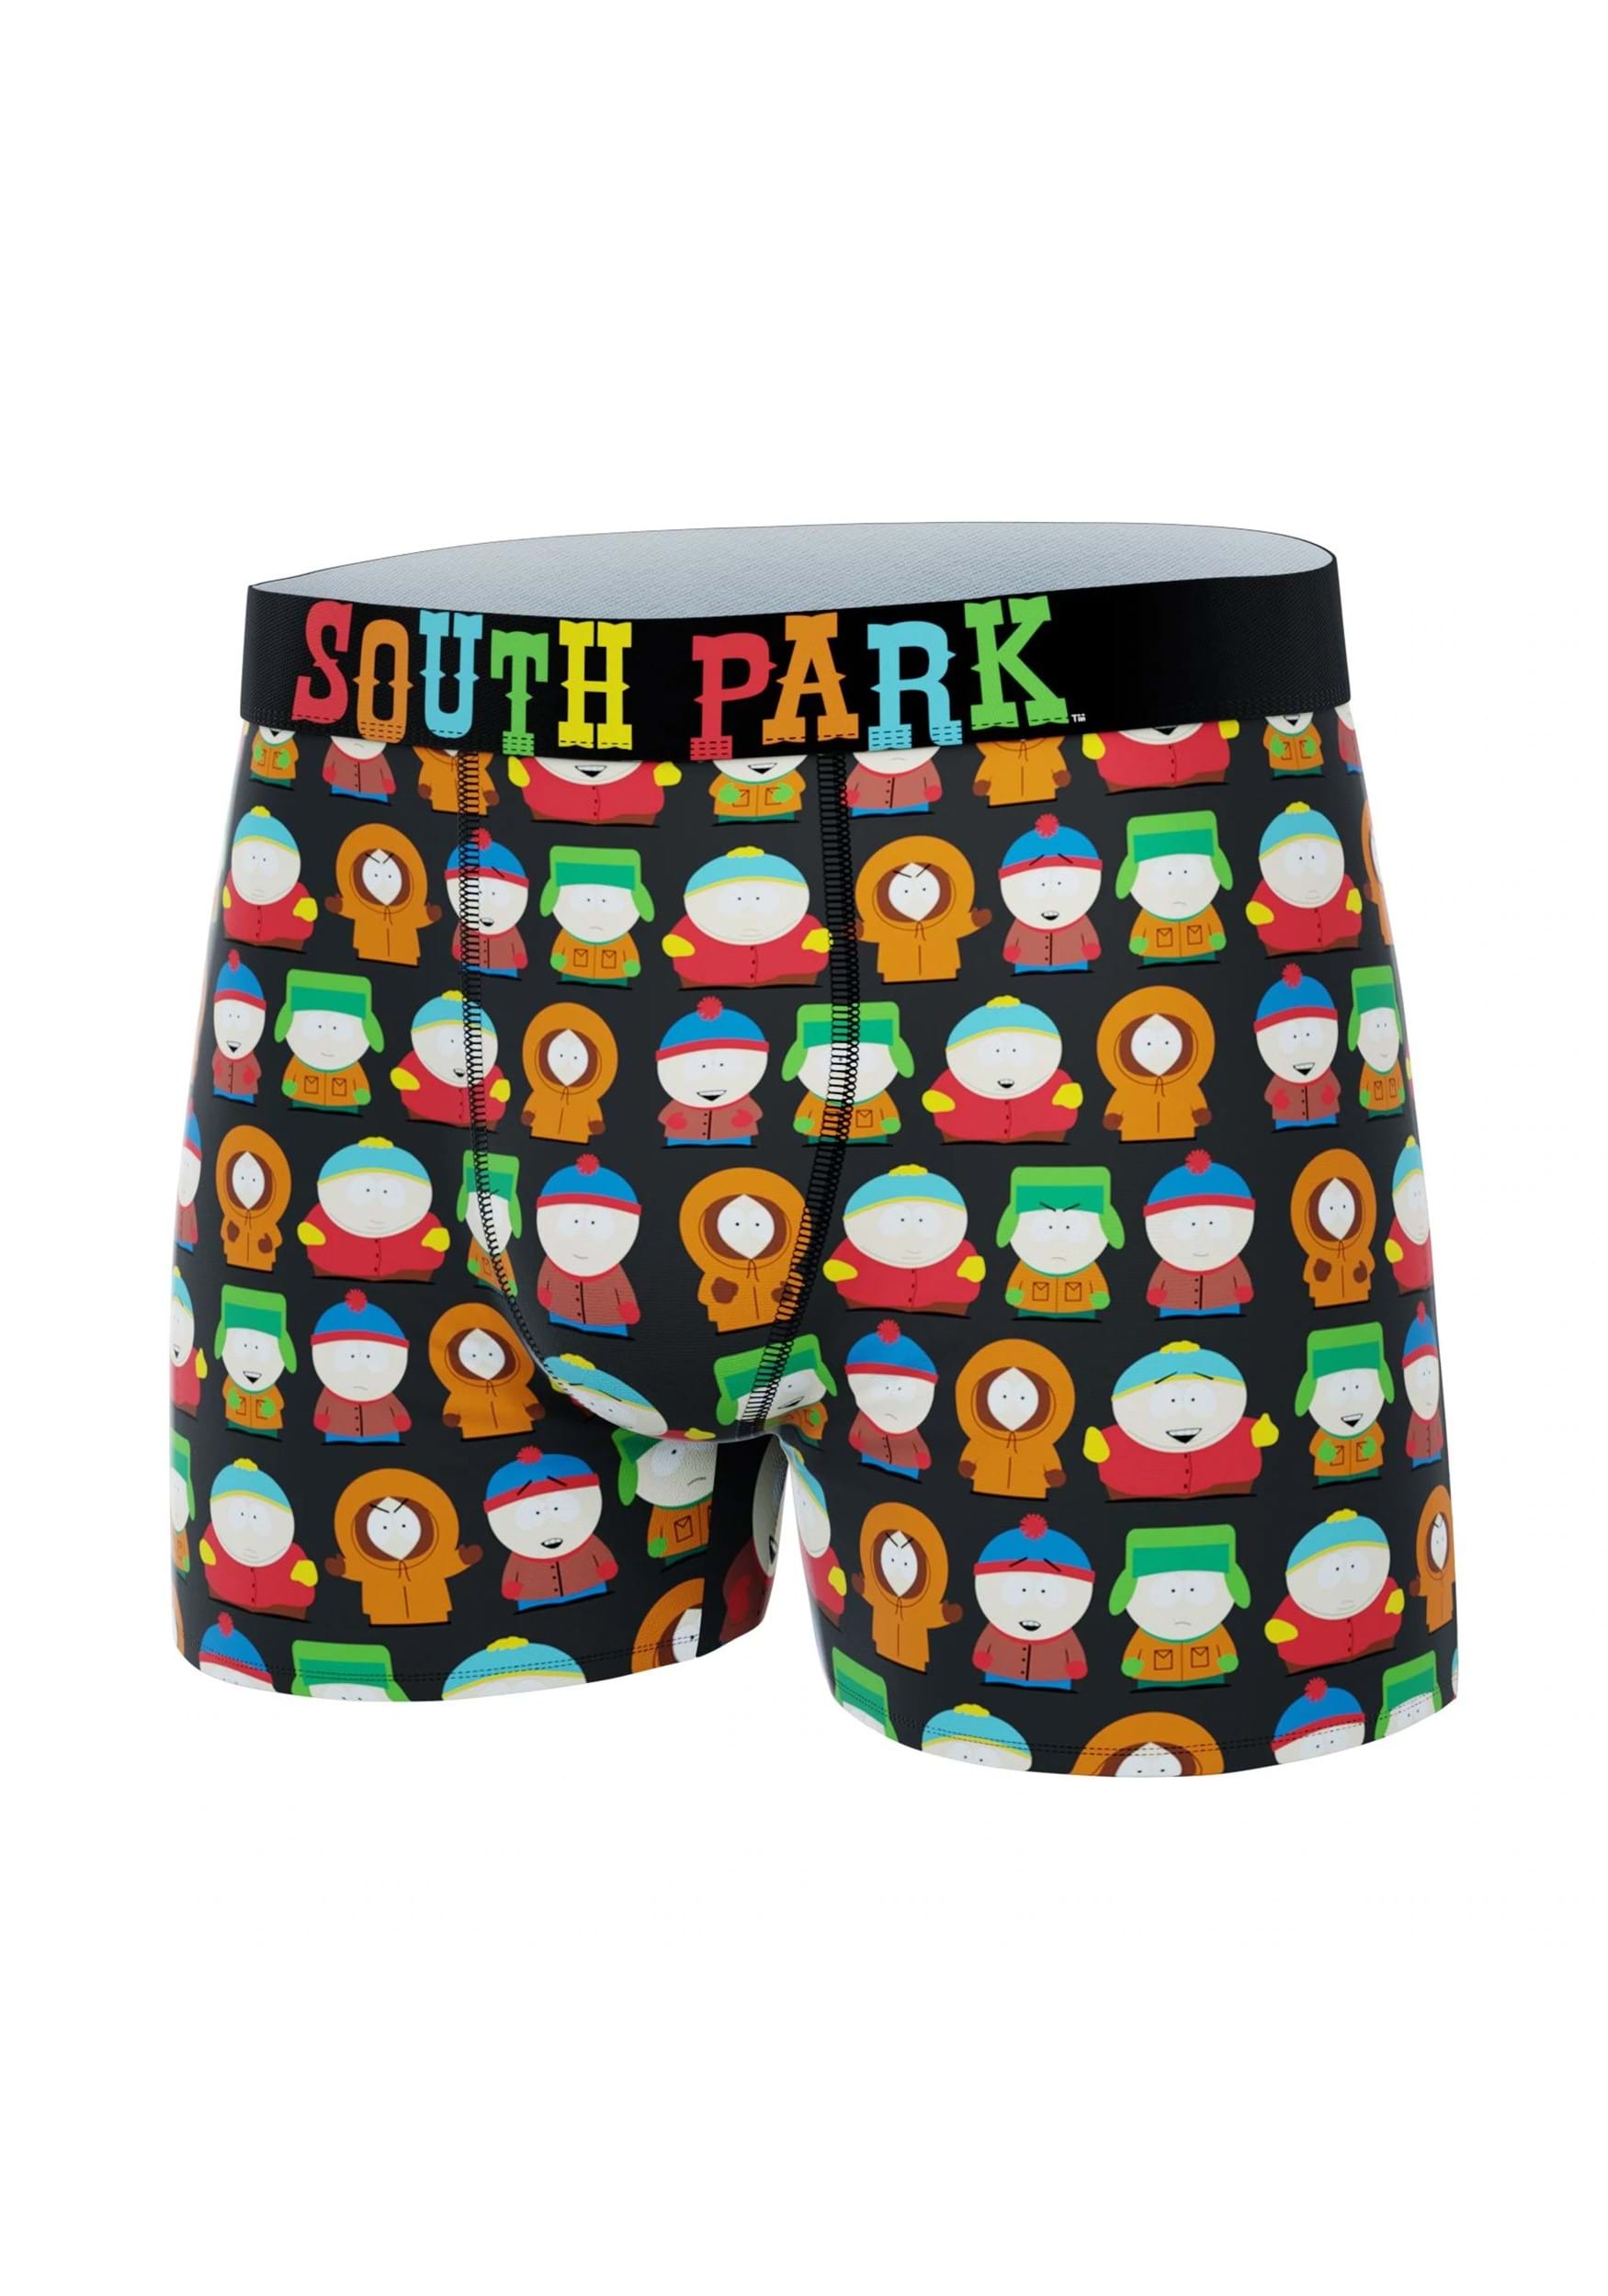 South Park Group Characters Men's Boxer Briefs